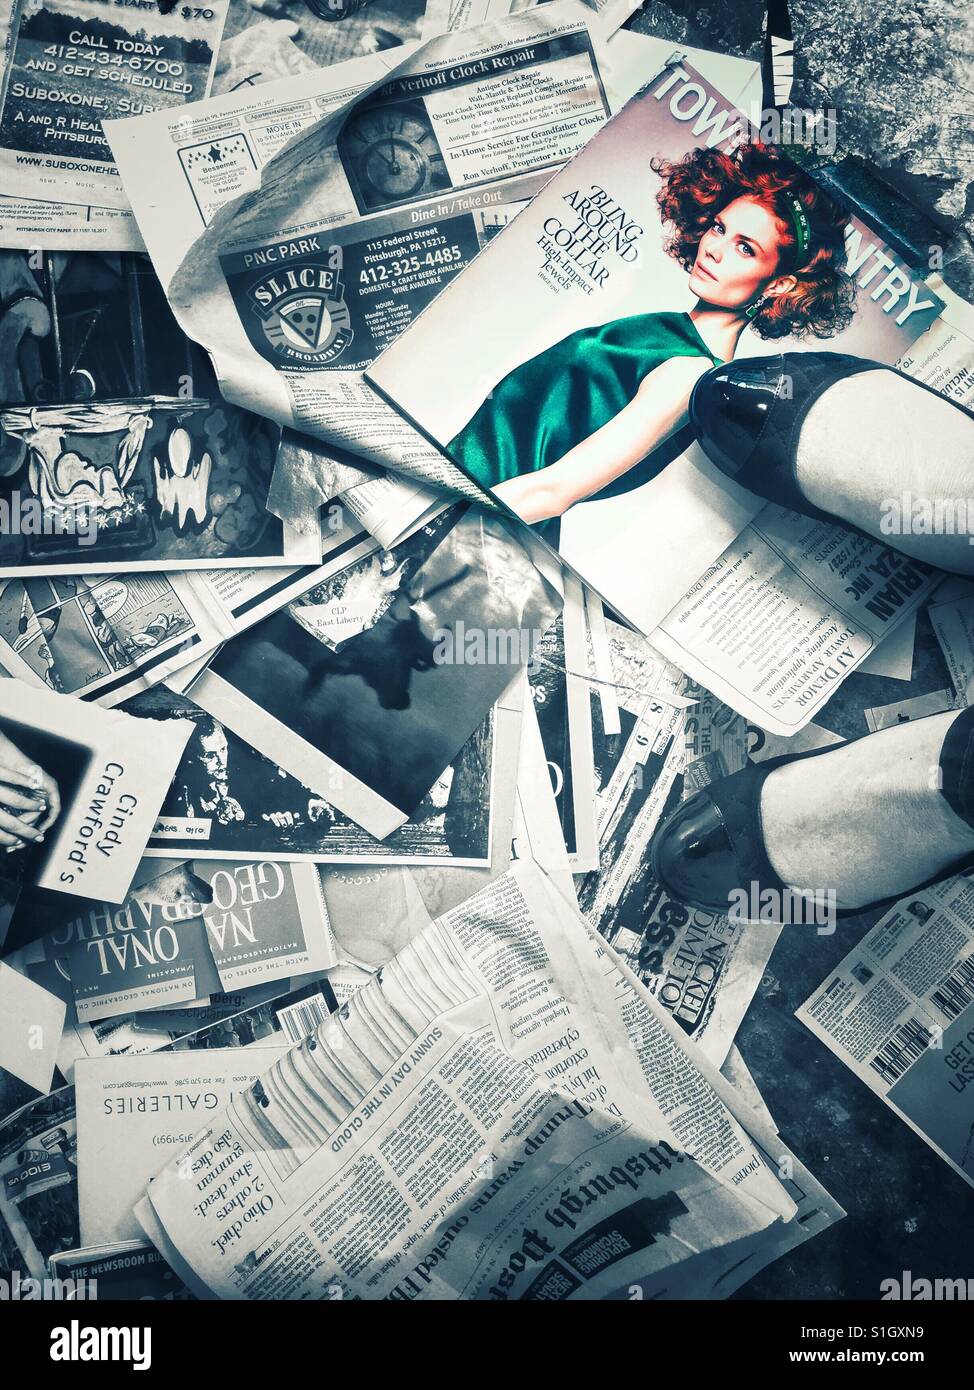 Eine Frau die Füße stehen auf einer großen Anzahl von Zeitschriftenseiten und Ausschnitte, die verstreut in den Boden, mit einem Bild von roten Haaren Fotomodell in Farbe Stockfoto